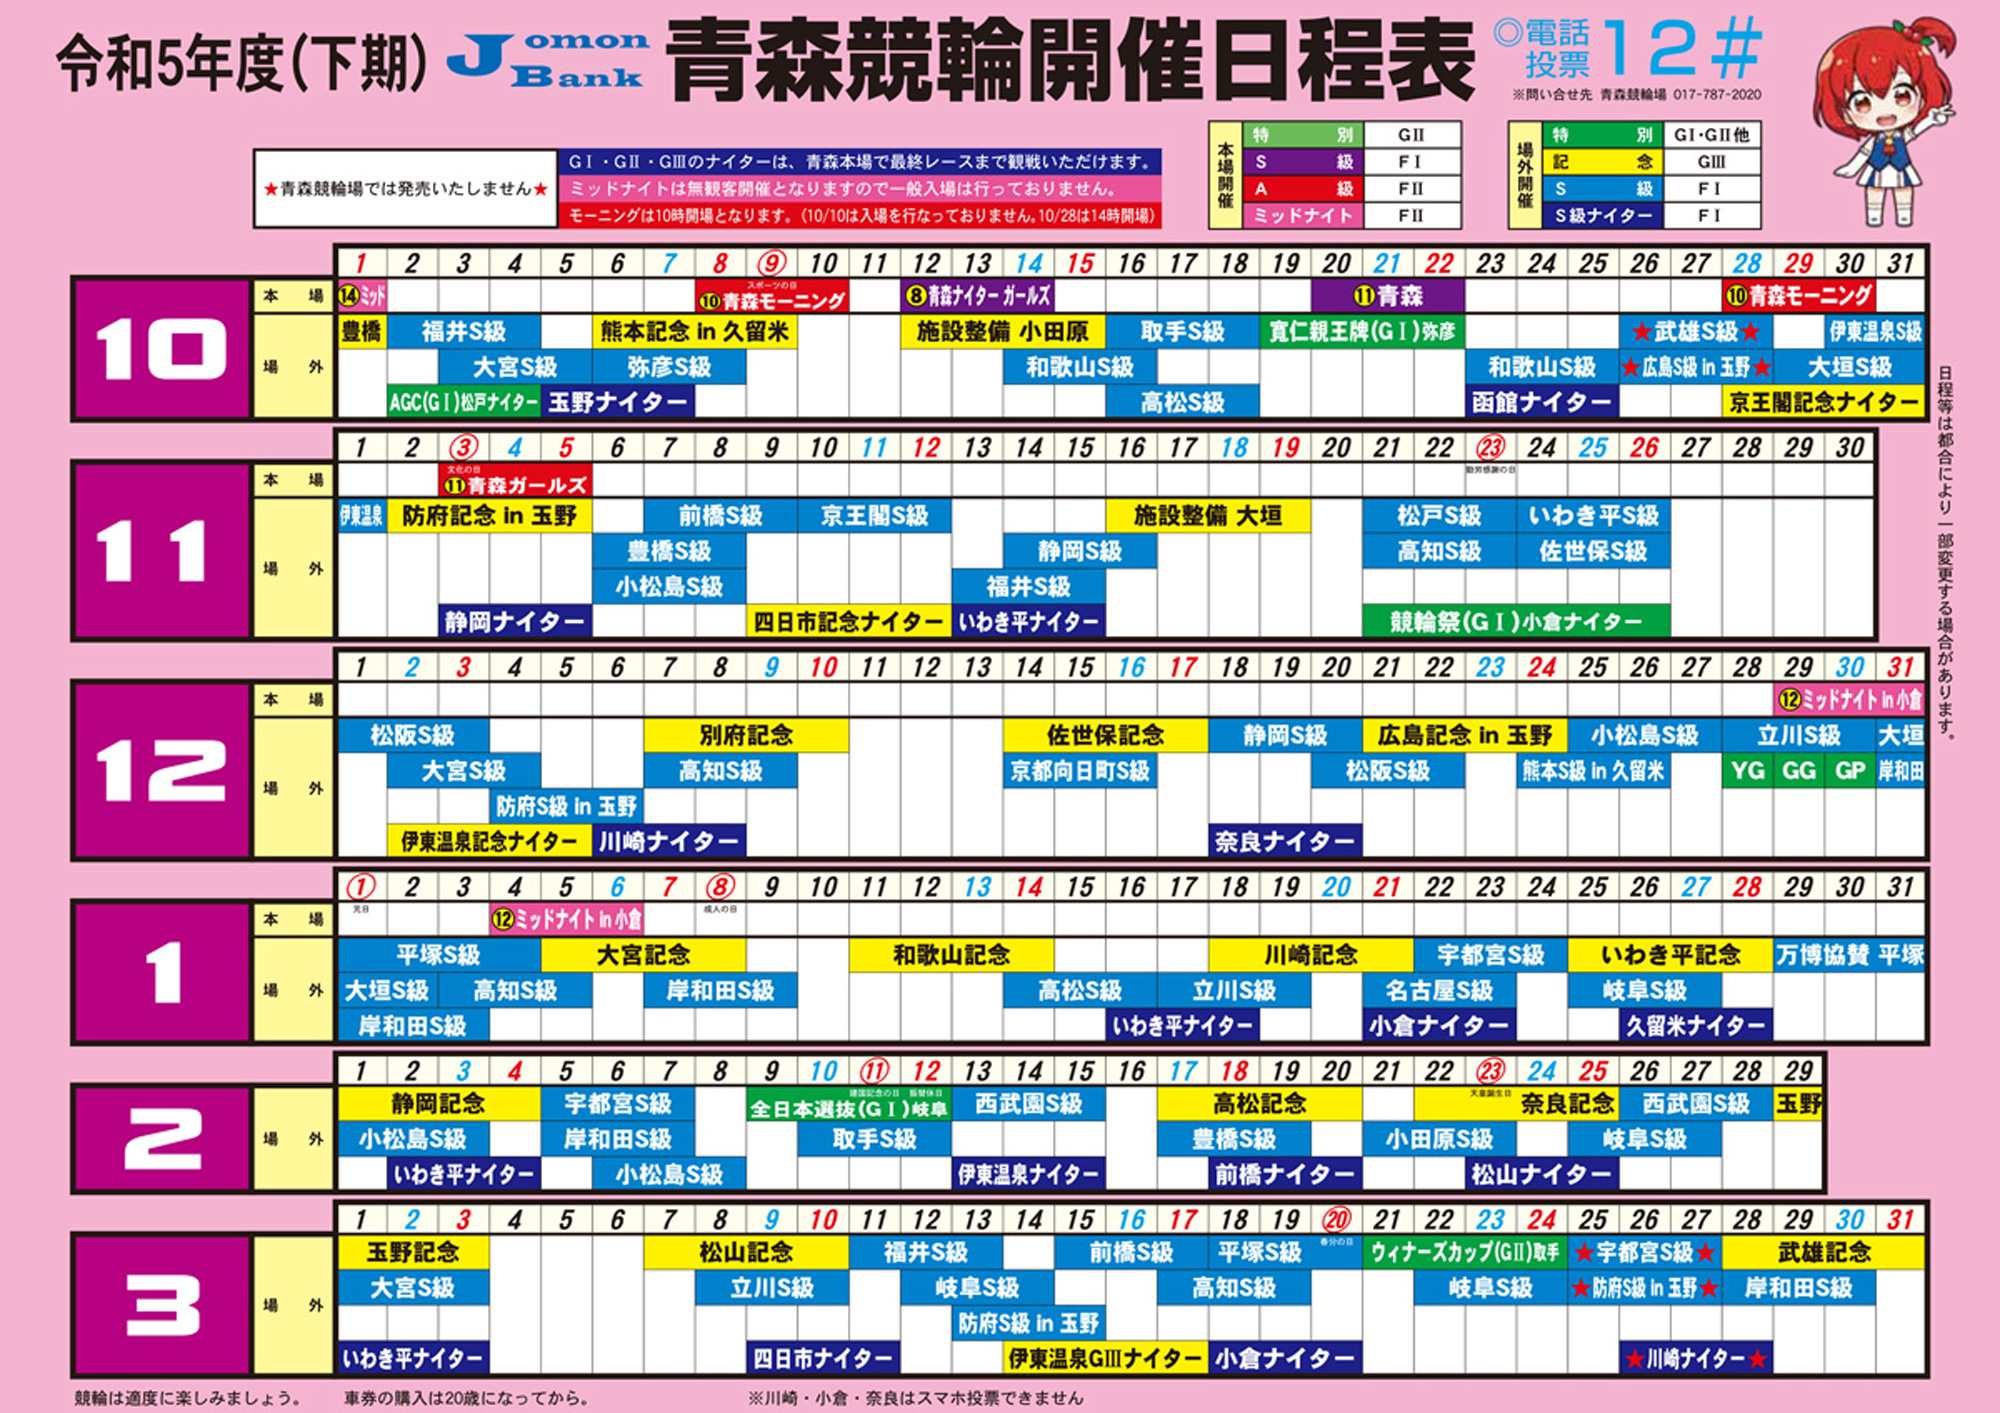 青森競輪場開催日程表(下期)